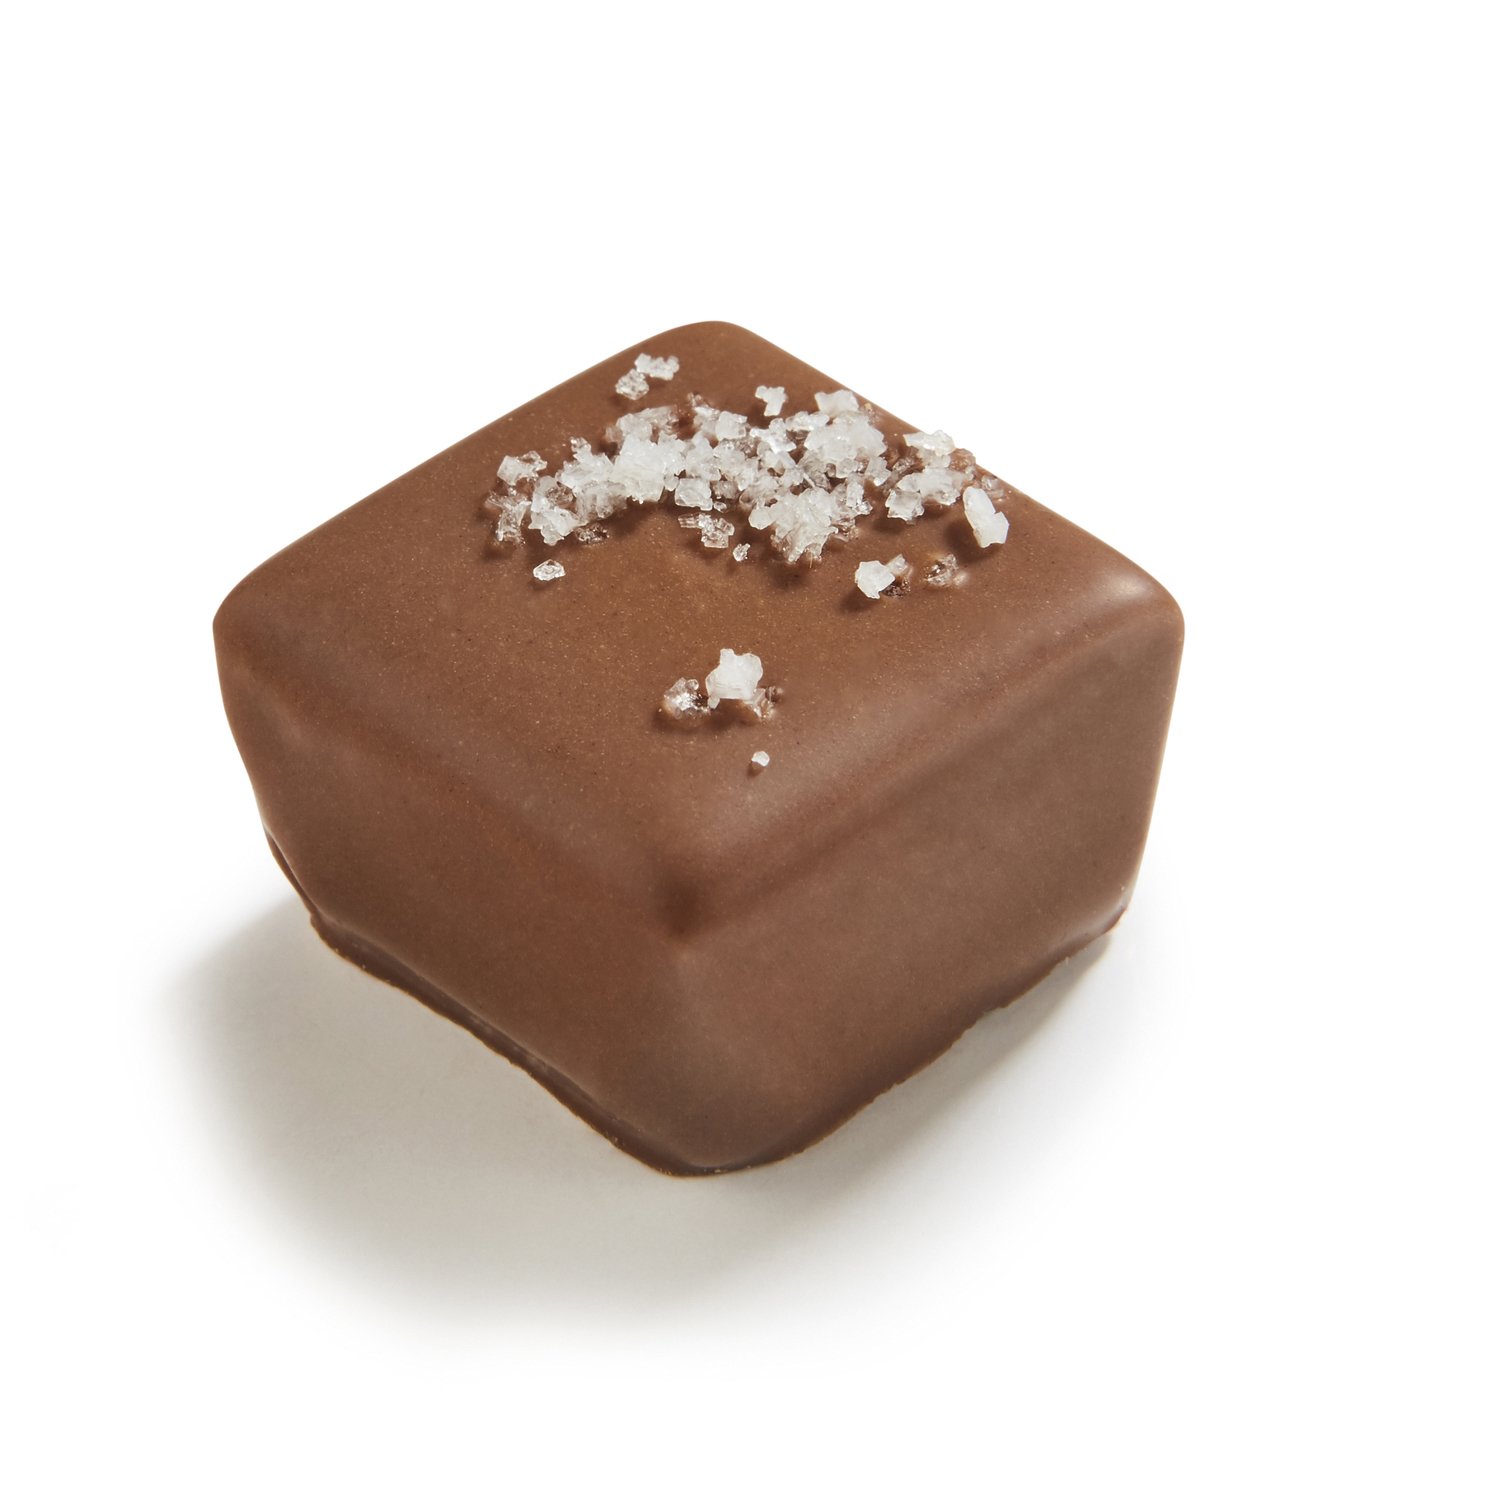 Verne - salted caramel ganache in milk chocolate 11.2g - 1kg